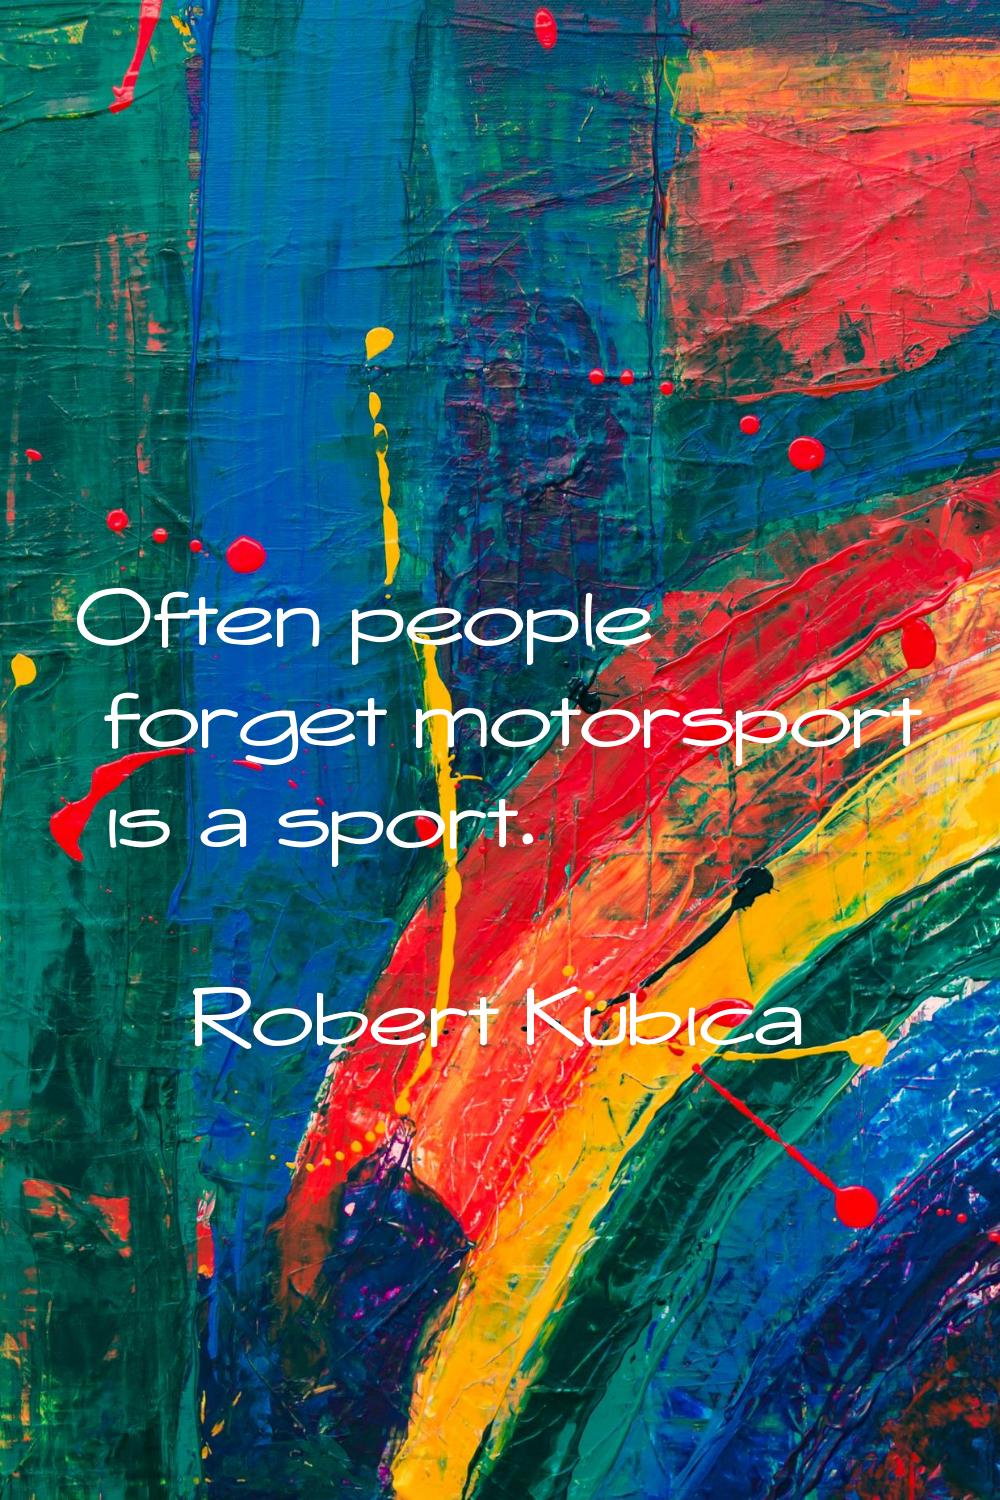 Often people forget motorsport is a sport.